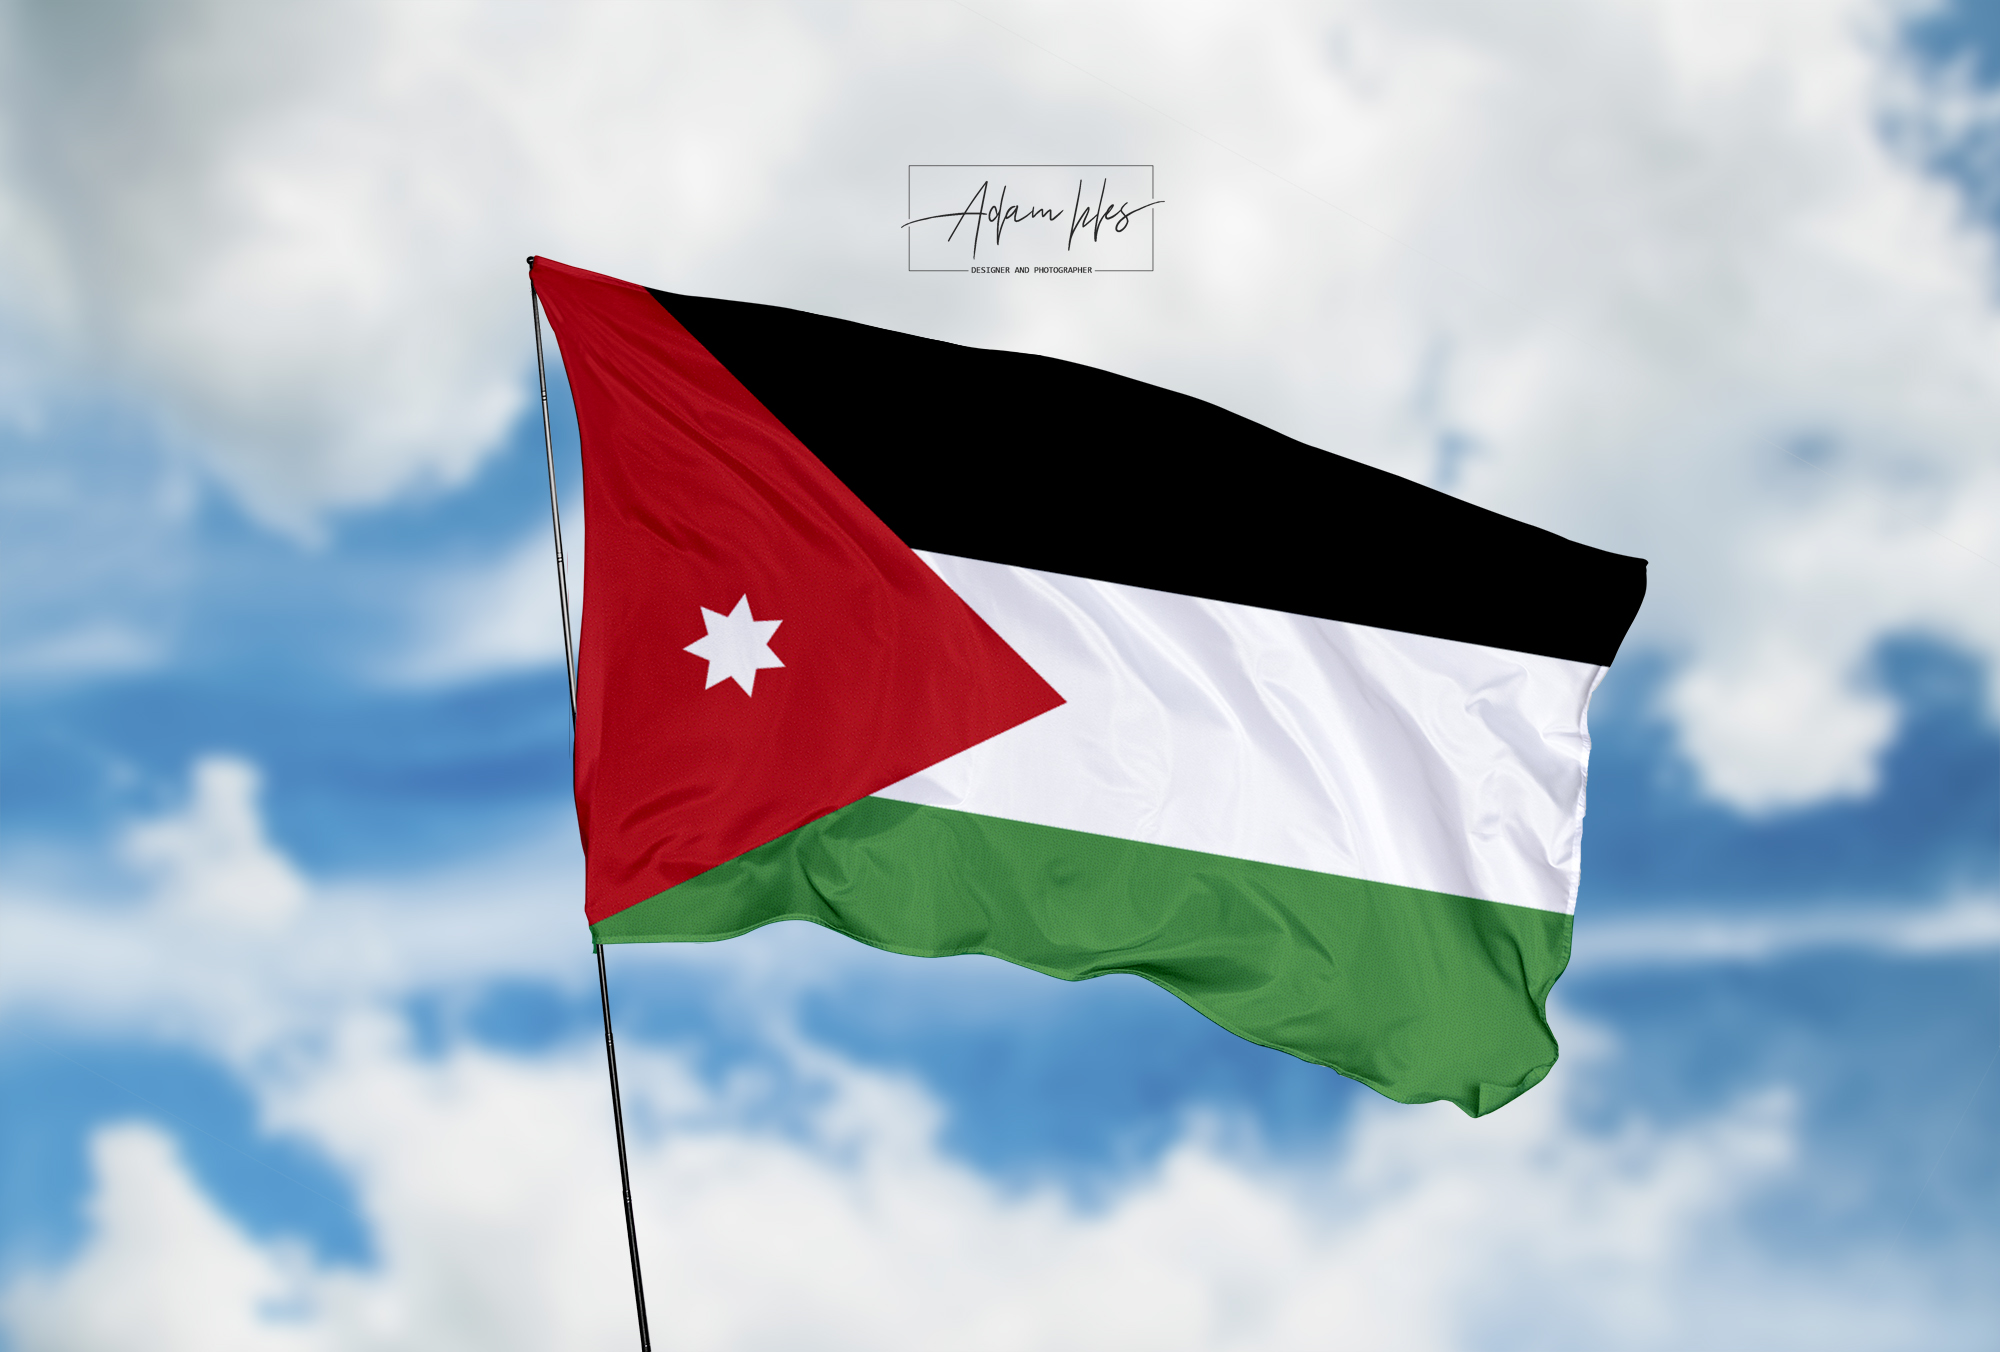 تحميل اجمل خلفية علم الأردن يرفرف في السماء - اجمل خلفيات الأردن الرائعة